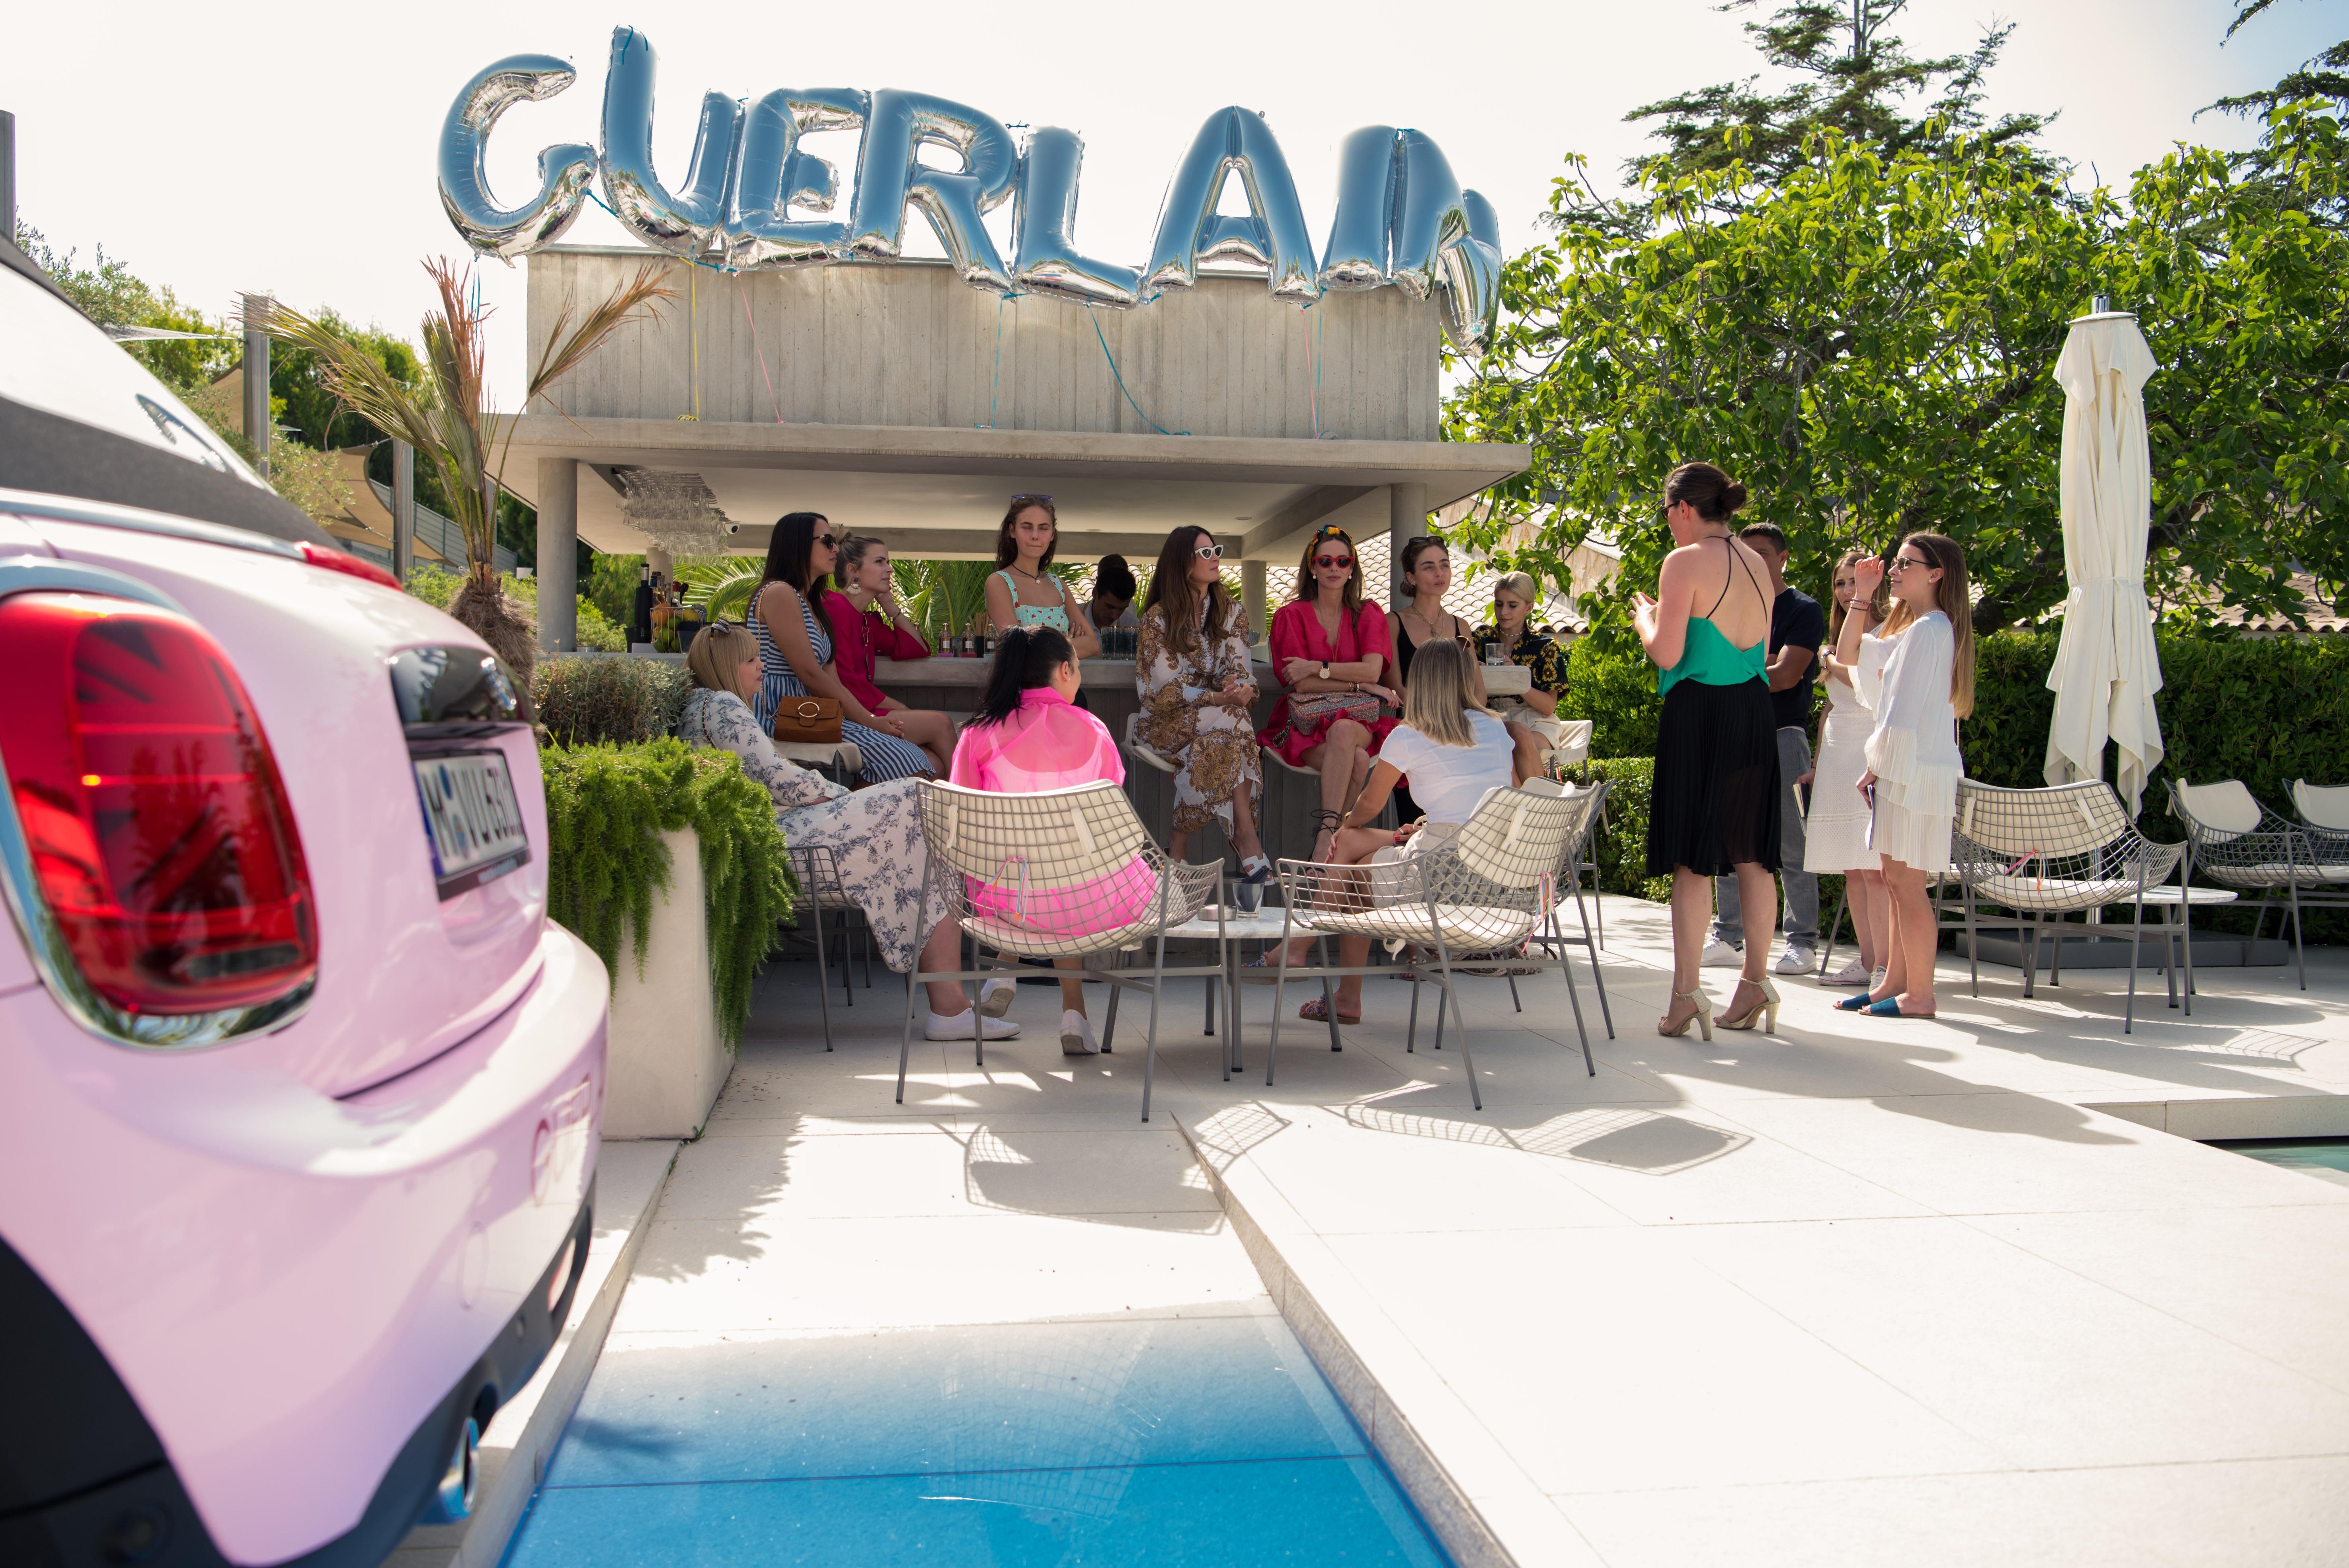 Wir waren mit Guerlain in St. Tropez, um den 20. Geburtstag der Aqua Allegoria-Düfte zu feiern #aquaallegoria #guerlain